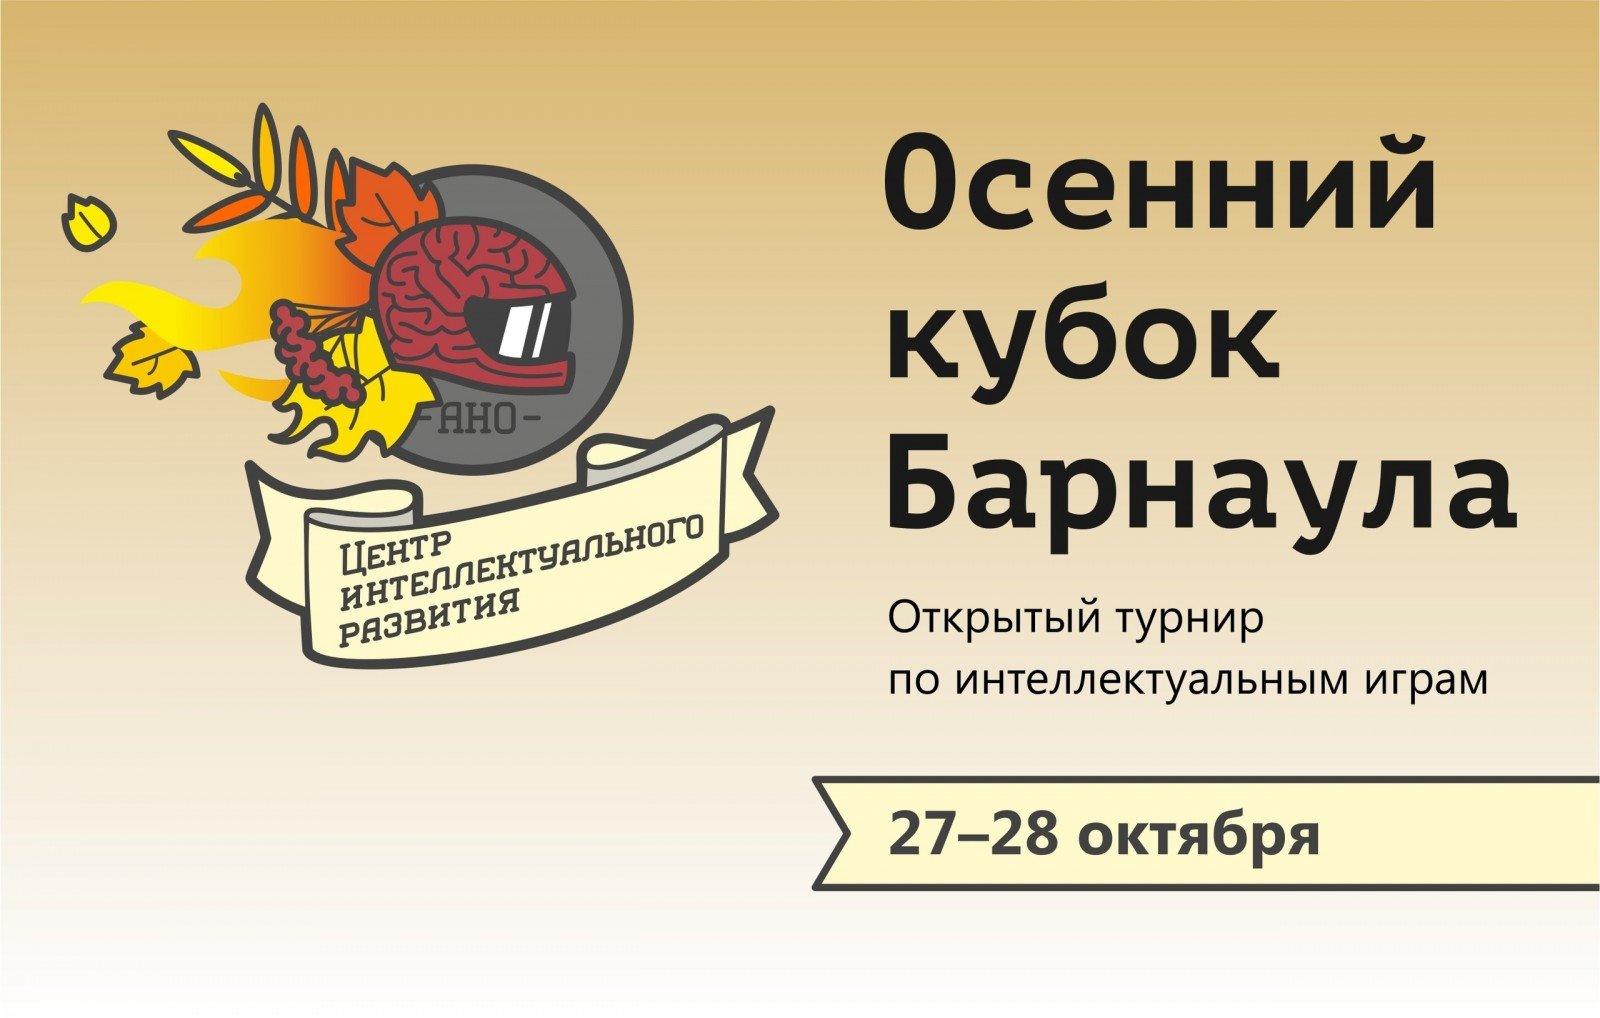 Открытый турнир по интеллектуальным играм «Осенний кубок Барнаула»